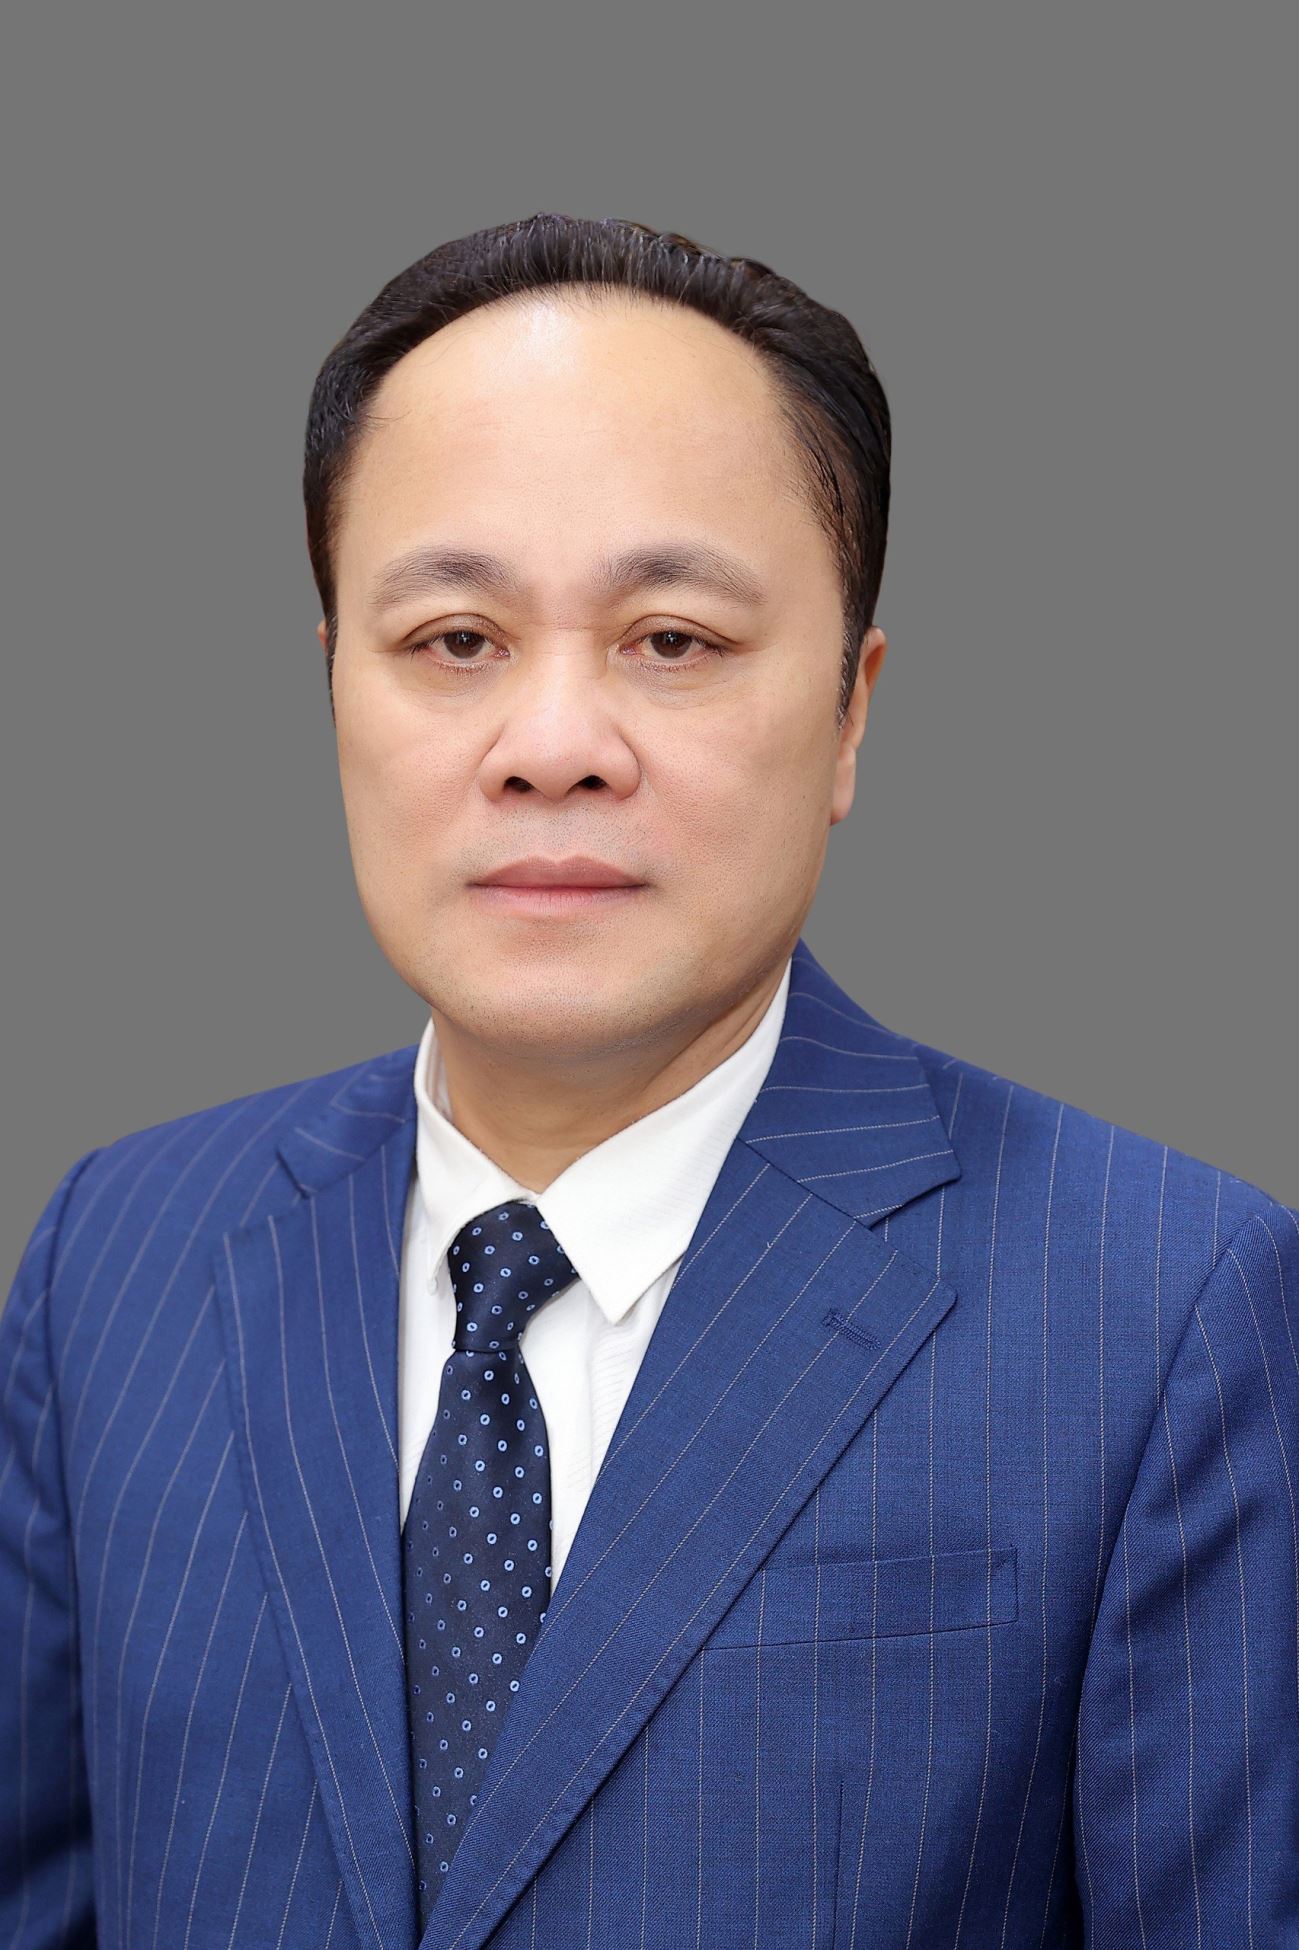 Nghệ sĩ - Kỷ lục Gia Chu Bảo Quế hiện là Chủ tịch Hội đồng cố vấn chính sách và phát triển; Phó Tổng thư ký, Uỷ viên Thường vụ Ban Chấp hành Liên hiệp các Hội UNESCO Việt Nam.